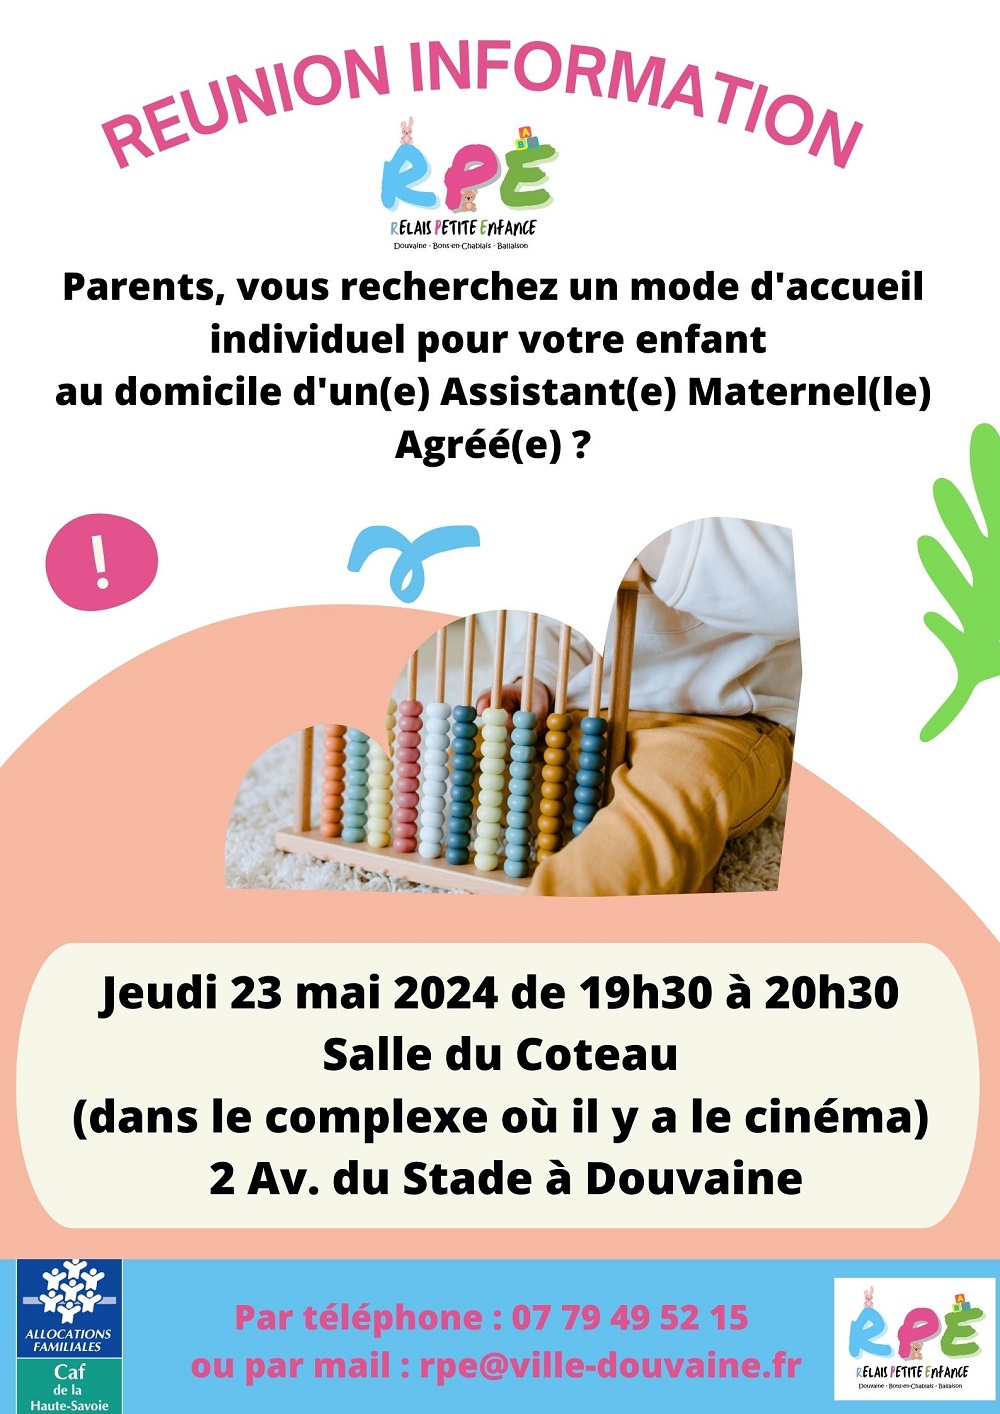 Affiche réunion d'information Parents le 23 mai 2024 à Douvaine